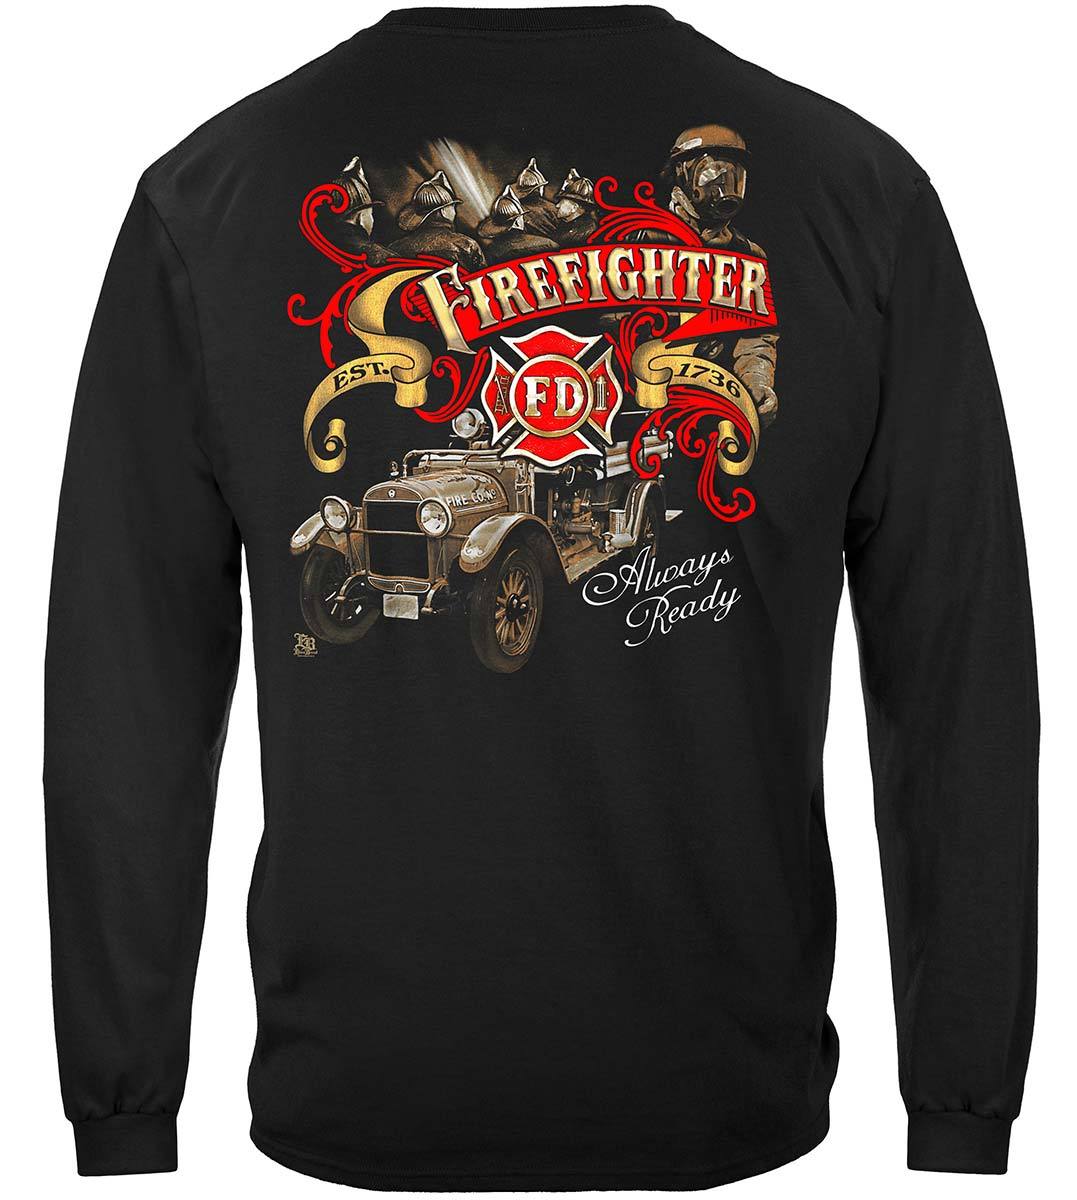 Elite Breed Antique Fire Dept Premium T-Shirt